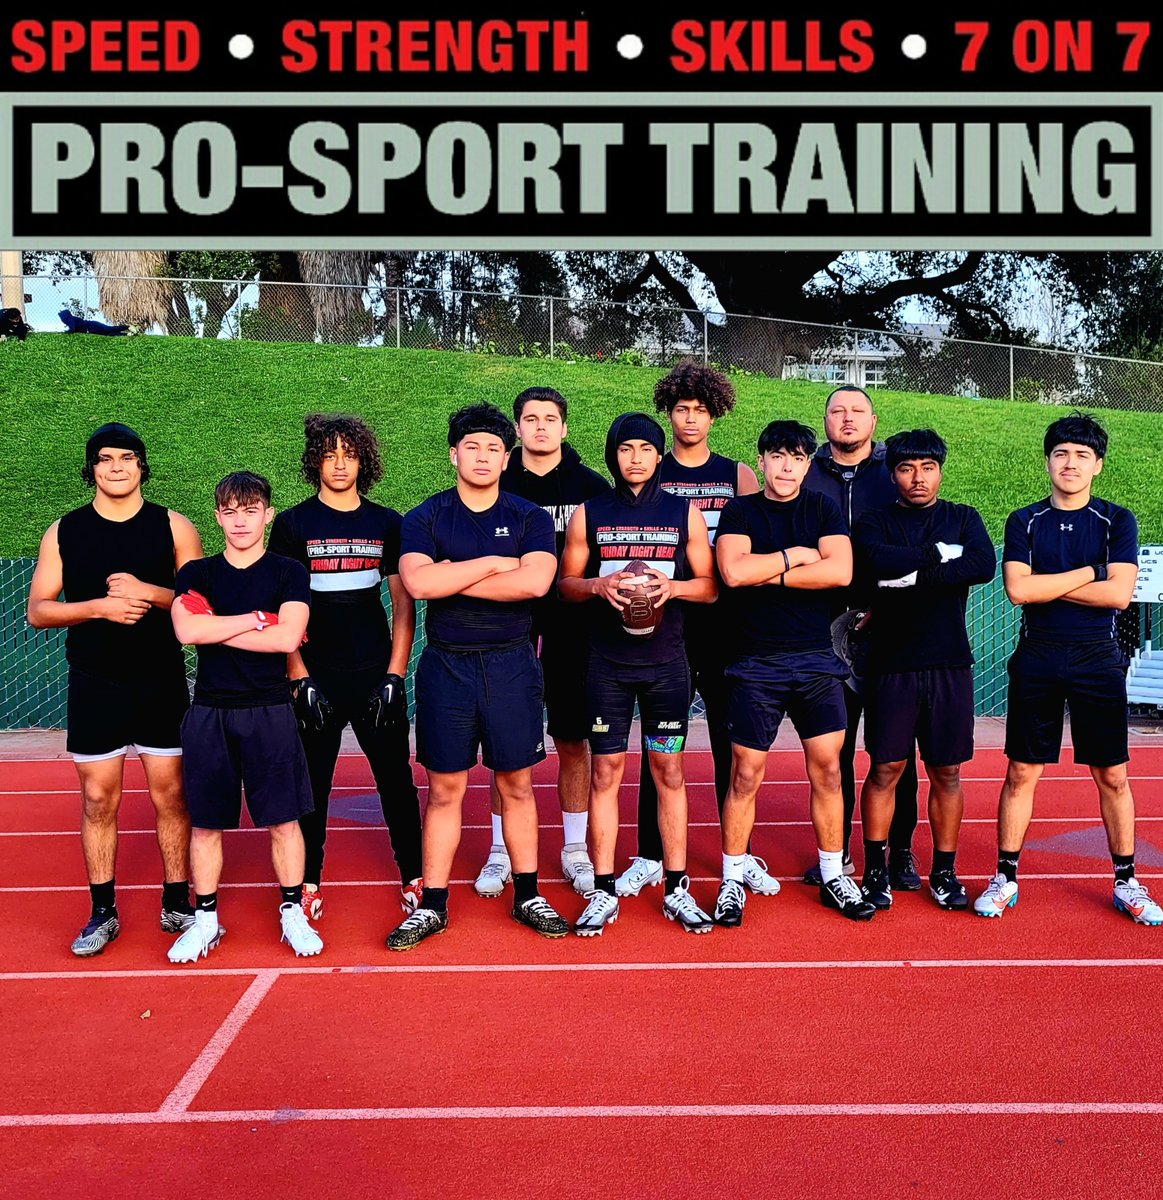 The @ProSportCoachAJ squad.
#alwaysworking